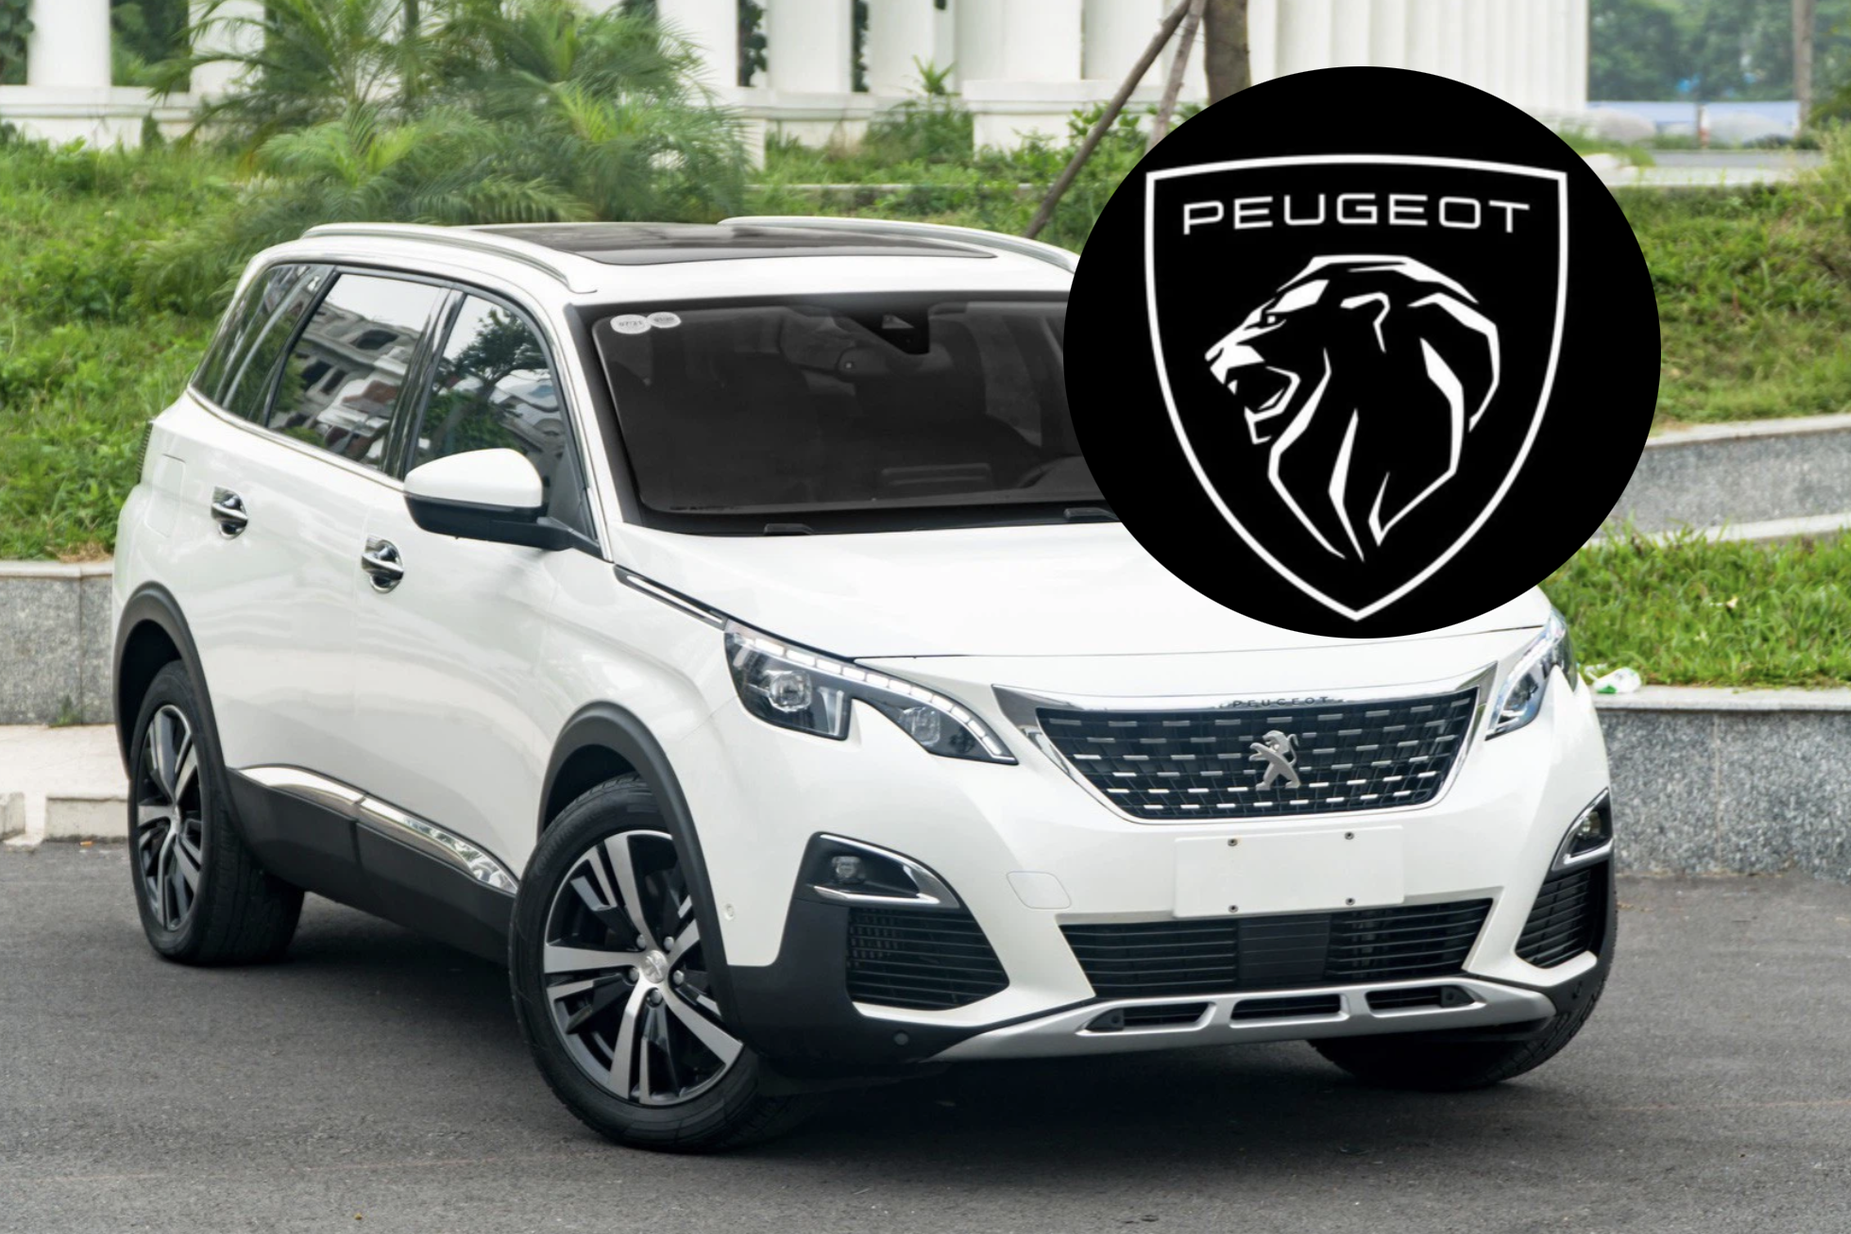 Hội chủ xe Peugeot Việt Nam có lẽ sẽ muốn đổi logo trong thời gian ...